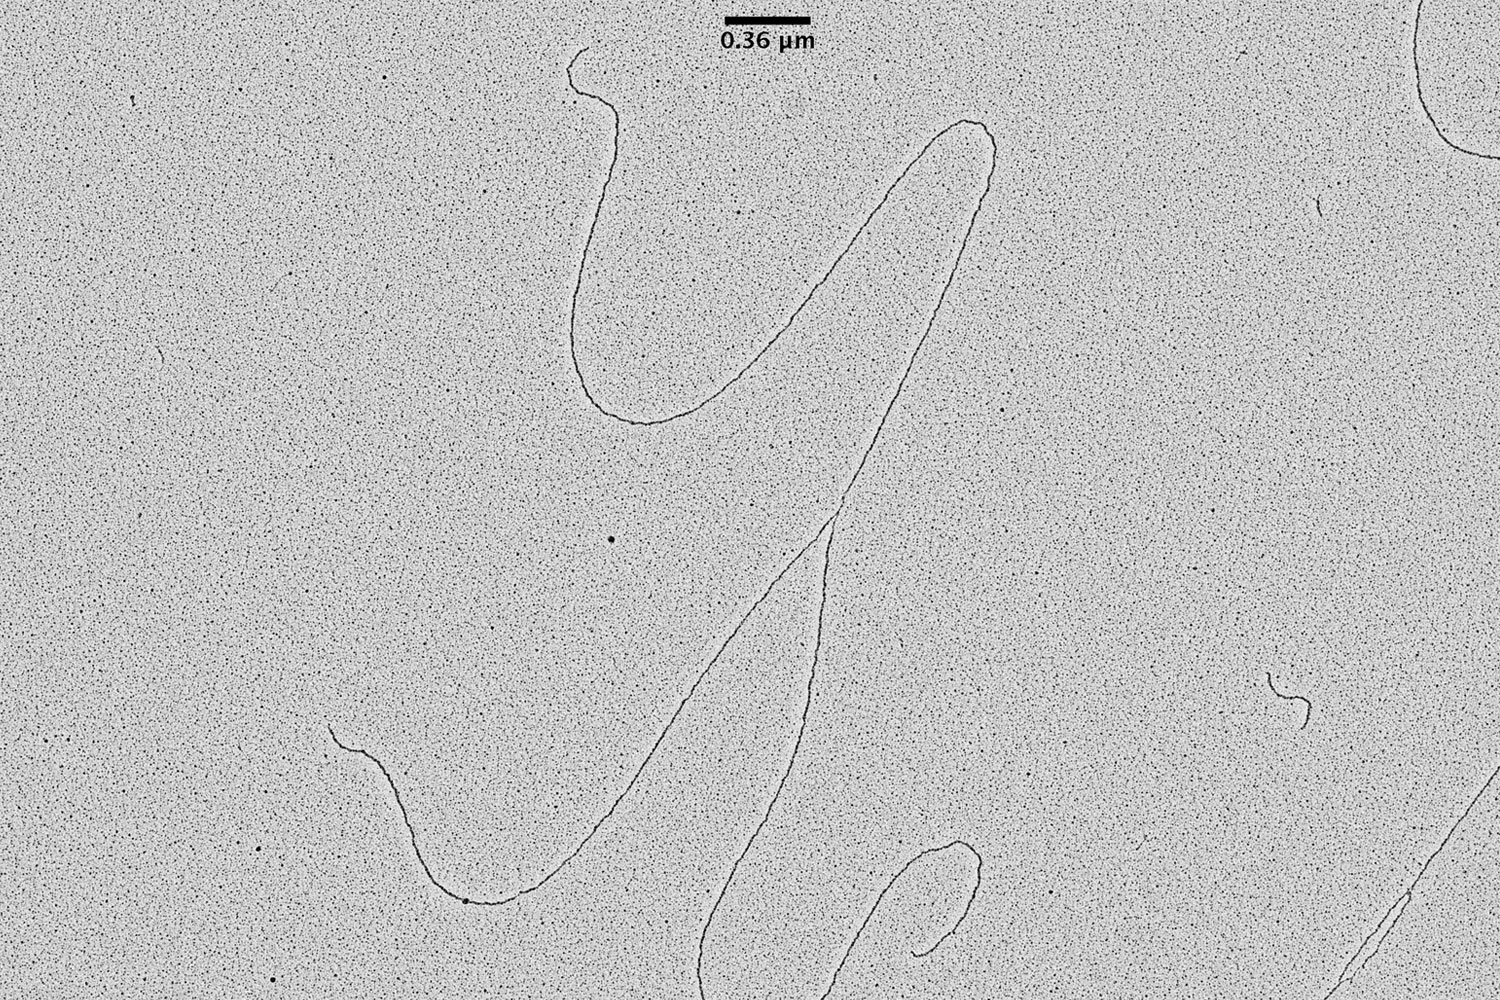 Immagine TEM di replicazione del DNA del lievito in erba S.cerevisiae ottenuta utilizzando l'ombreggiatura rotante a basso angolo con l'EM ACE600 e-beam coater